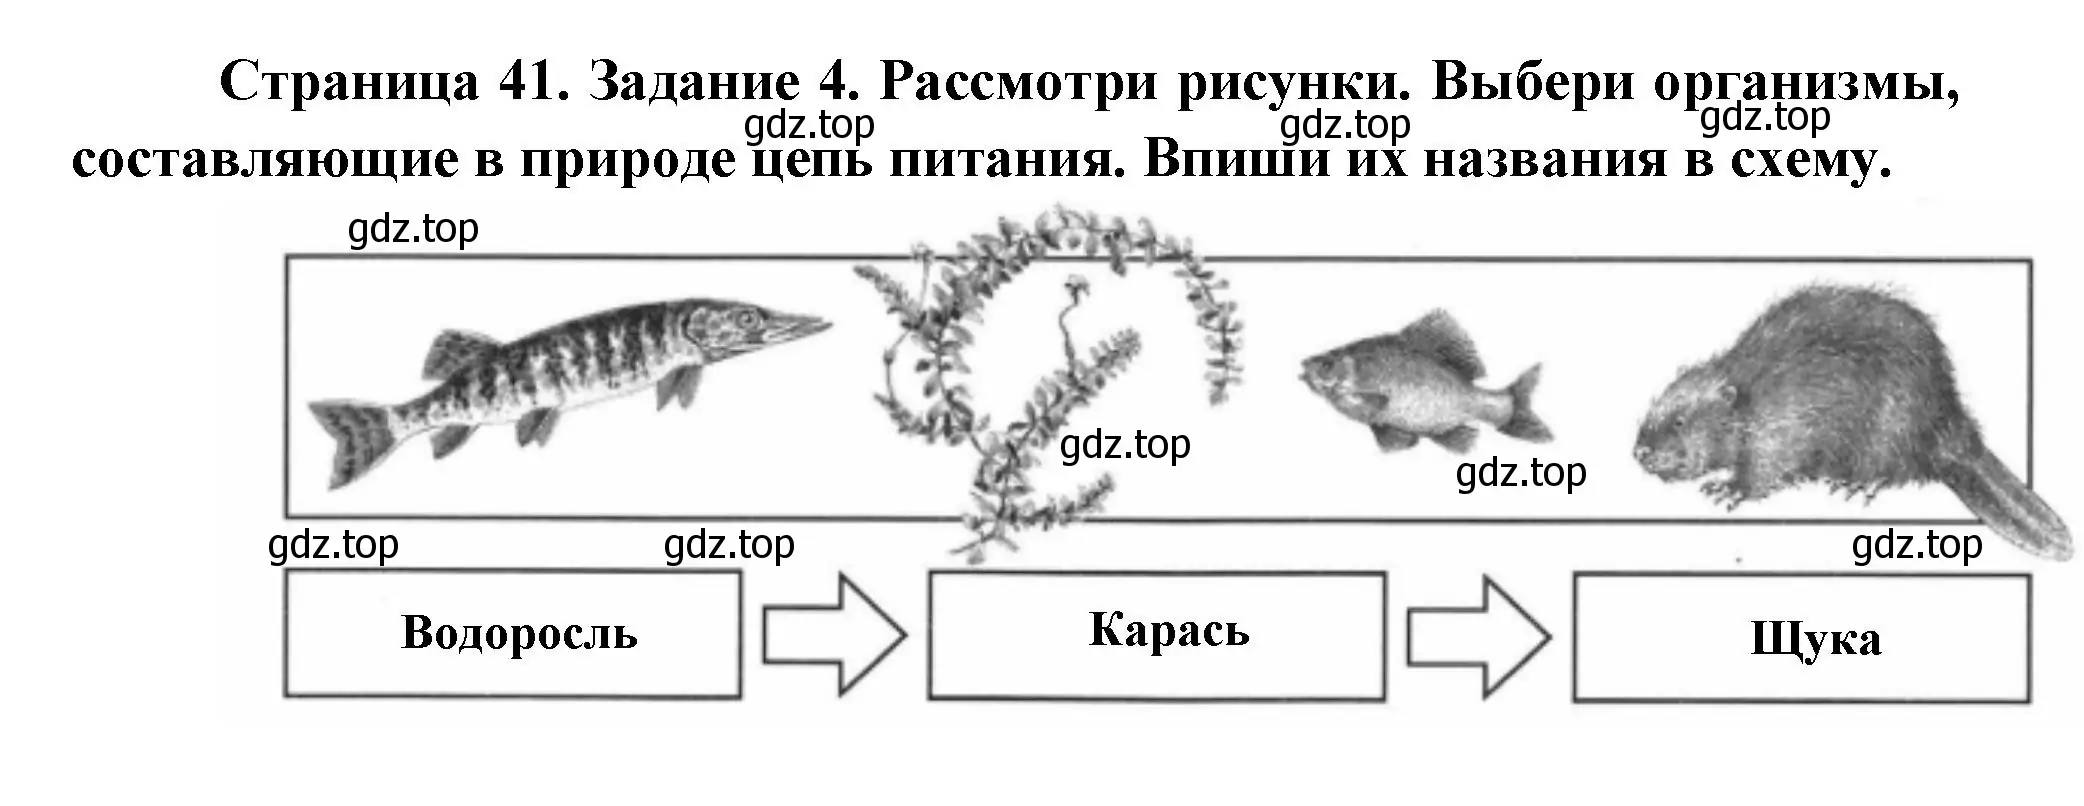 Решение номер 4 (страница 41) гдз по окружающему миру 4 класс Плешаков, Крючкова, проверочные работы